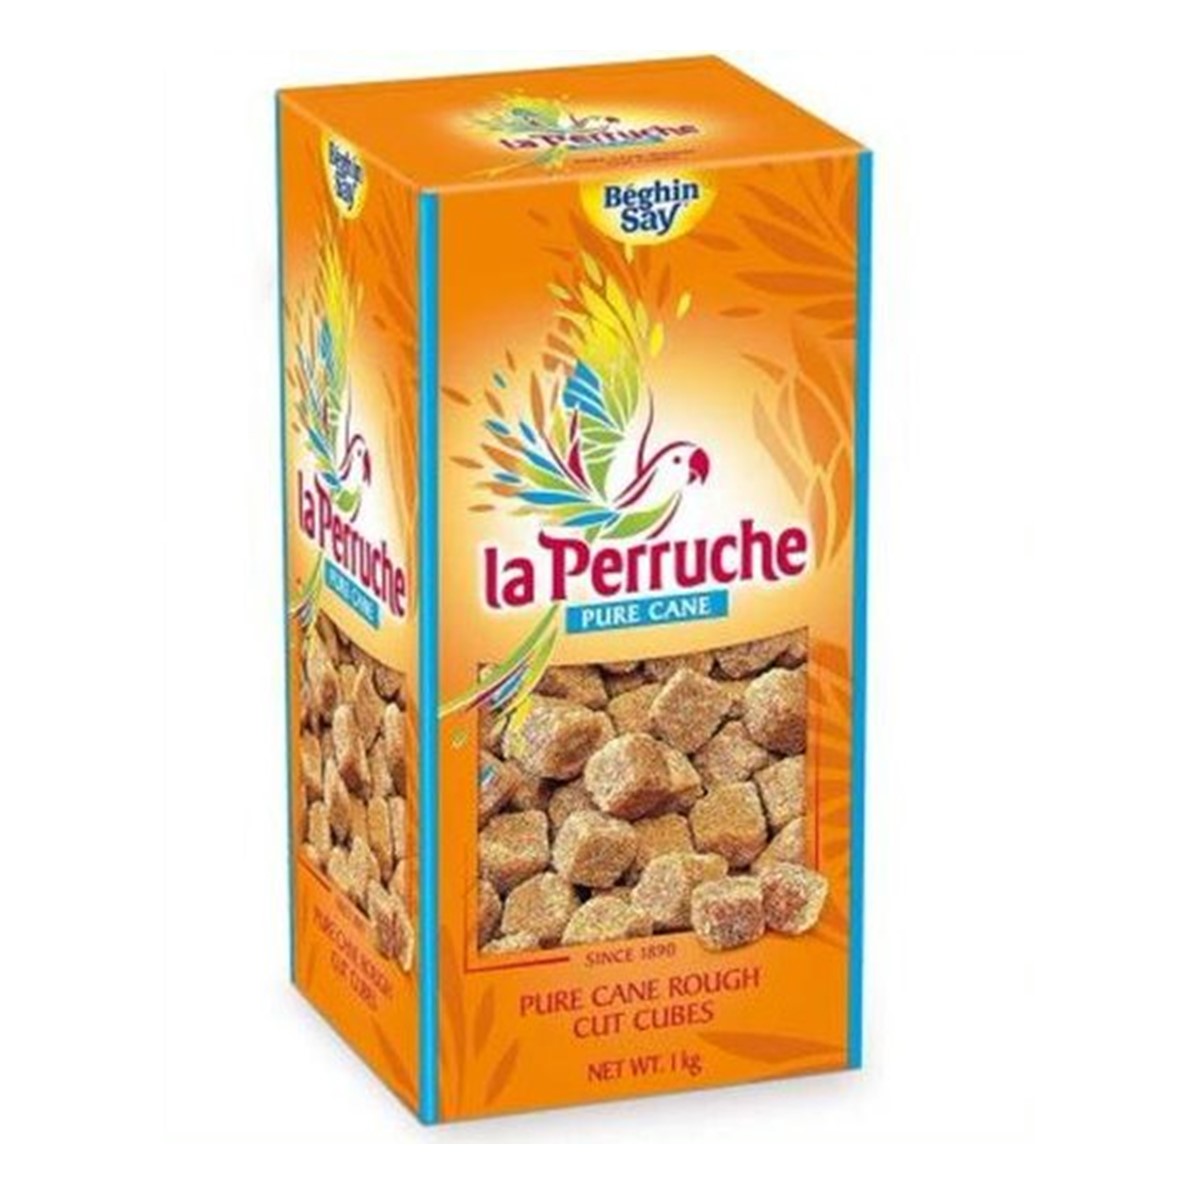 La Perruche Demerara Rough Cut Cubes - 1kg box